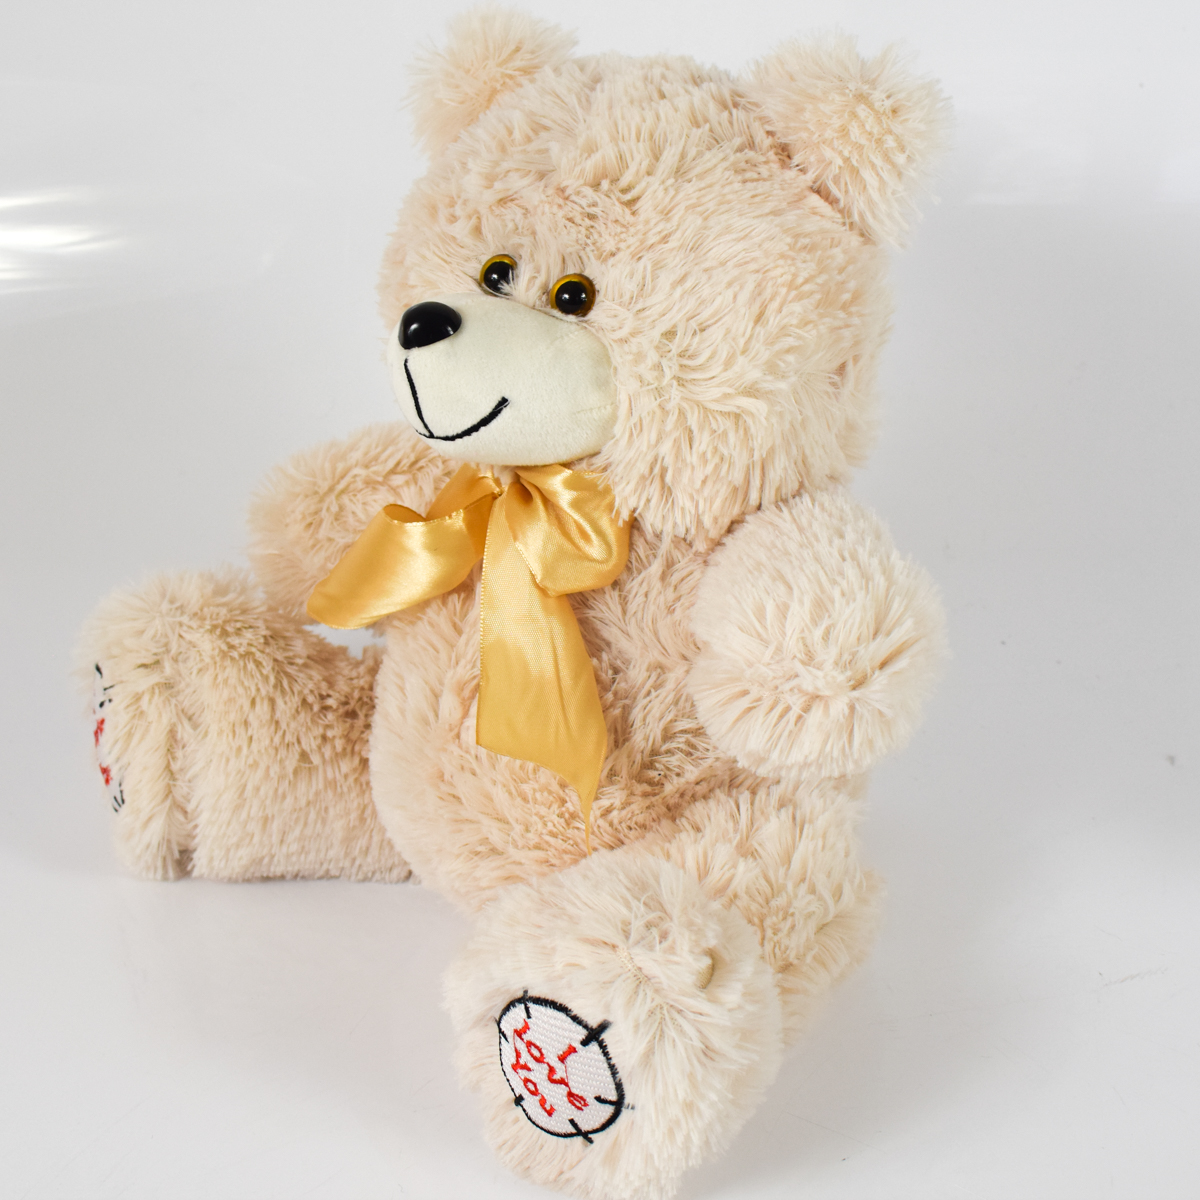 Мишка плюшевый мягкий медведь Тед 50 см. Мягкая игрушка медведь. Цвет светлый латте.